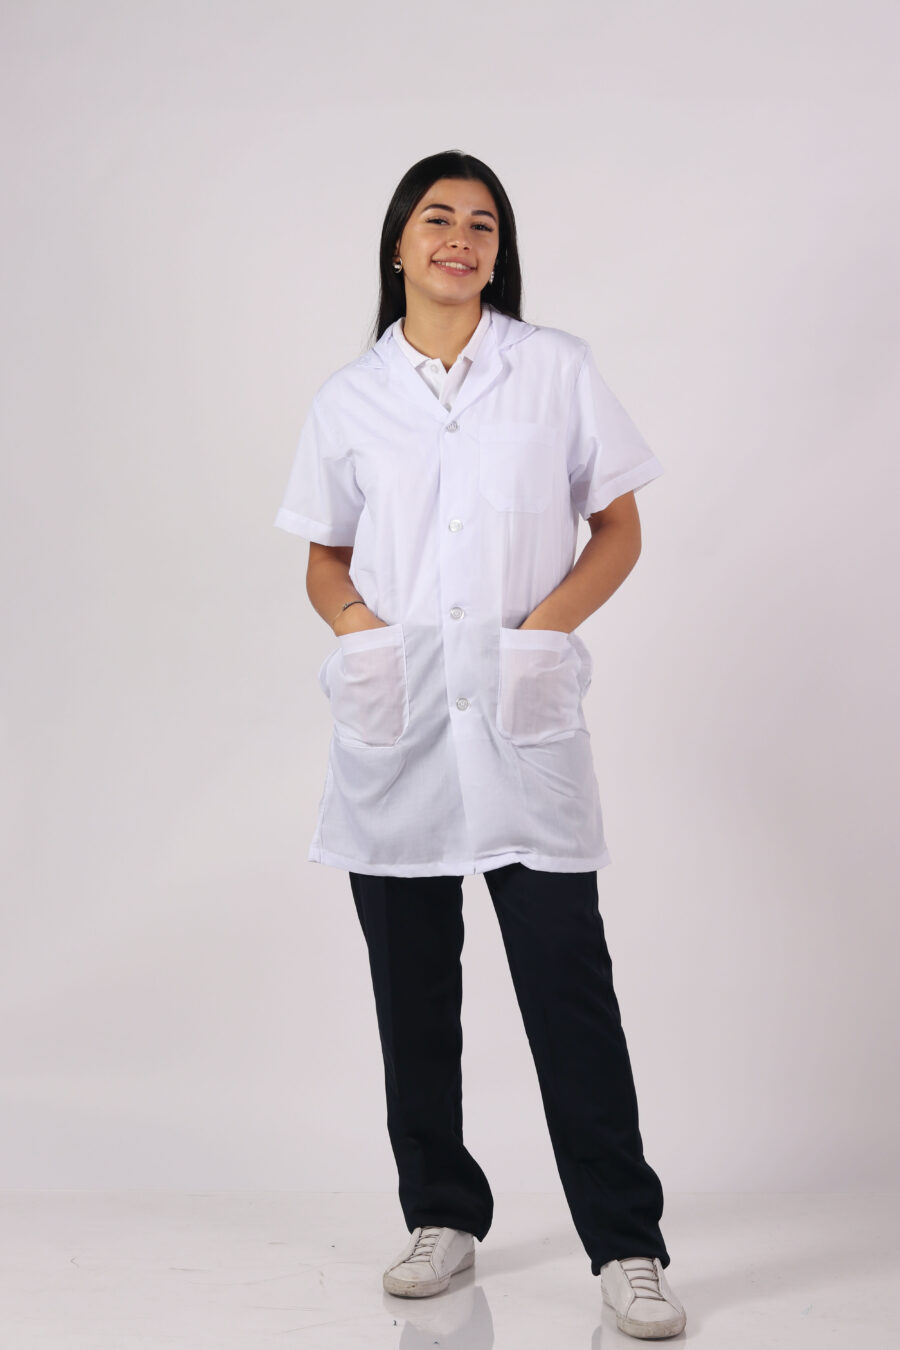 Vittorio uniformes- Bata laboratorio o médica blanca